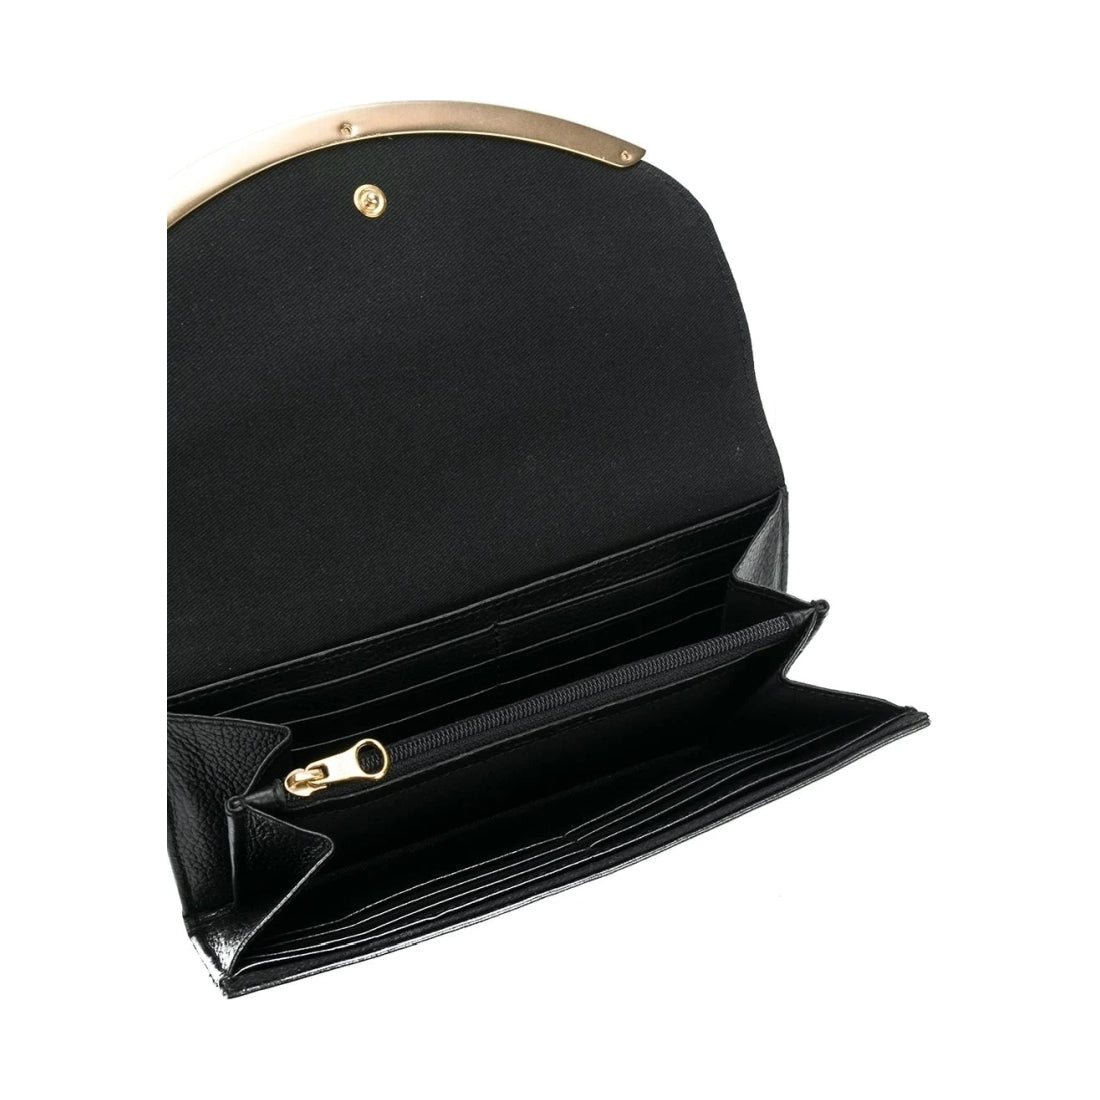 See By Chloe womens black lizzie long wallet | Vilbury London